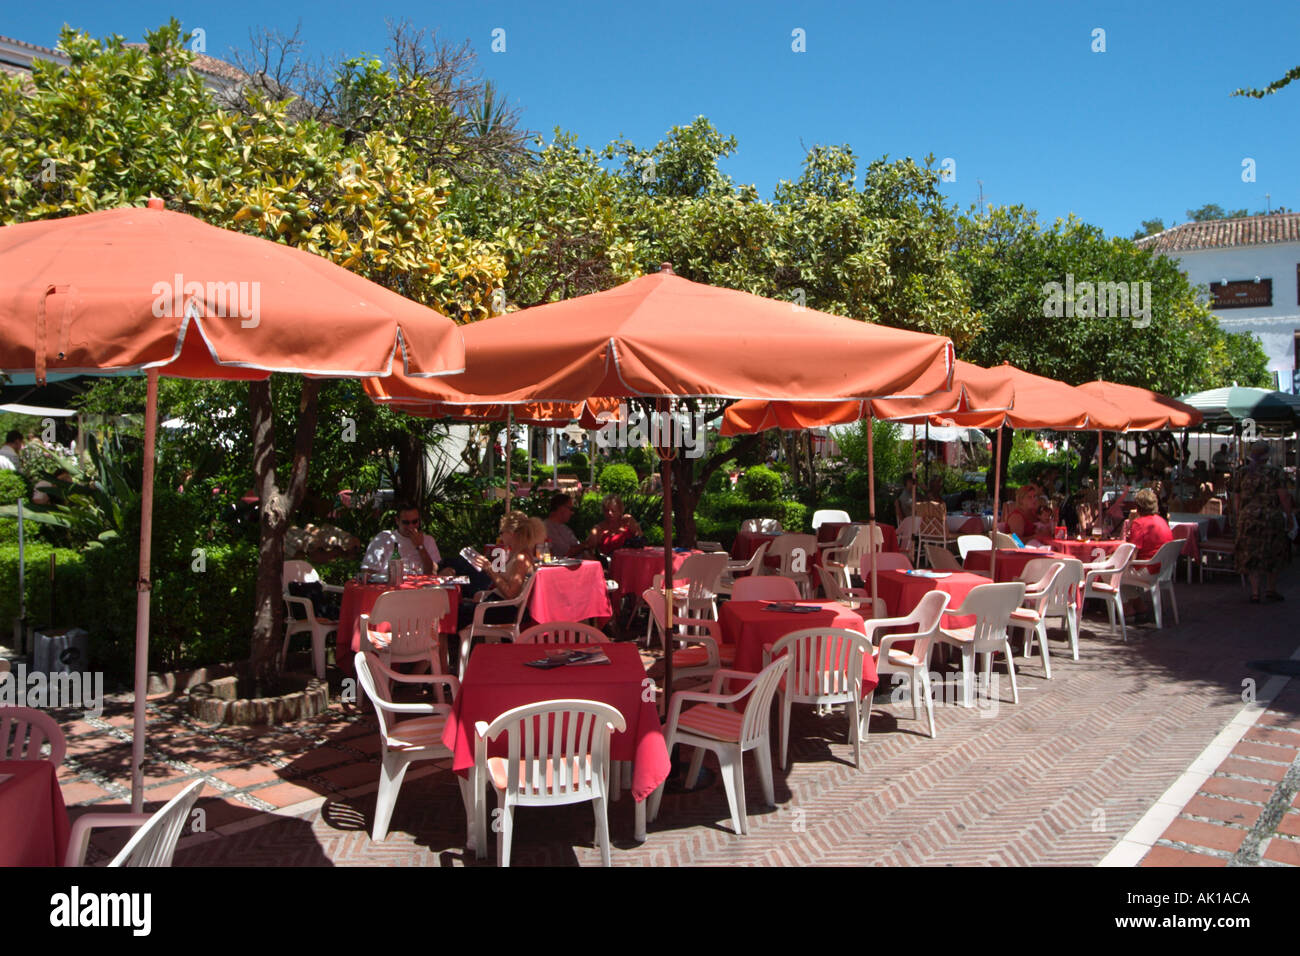 Pavement Cafe nella Plaza de los Naranjos, Casco Antiguo (Città Vecchia), Marbella, Costa del Sol, Andalusia, Spagna Foto Stock